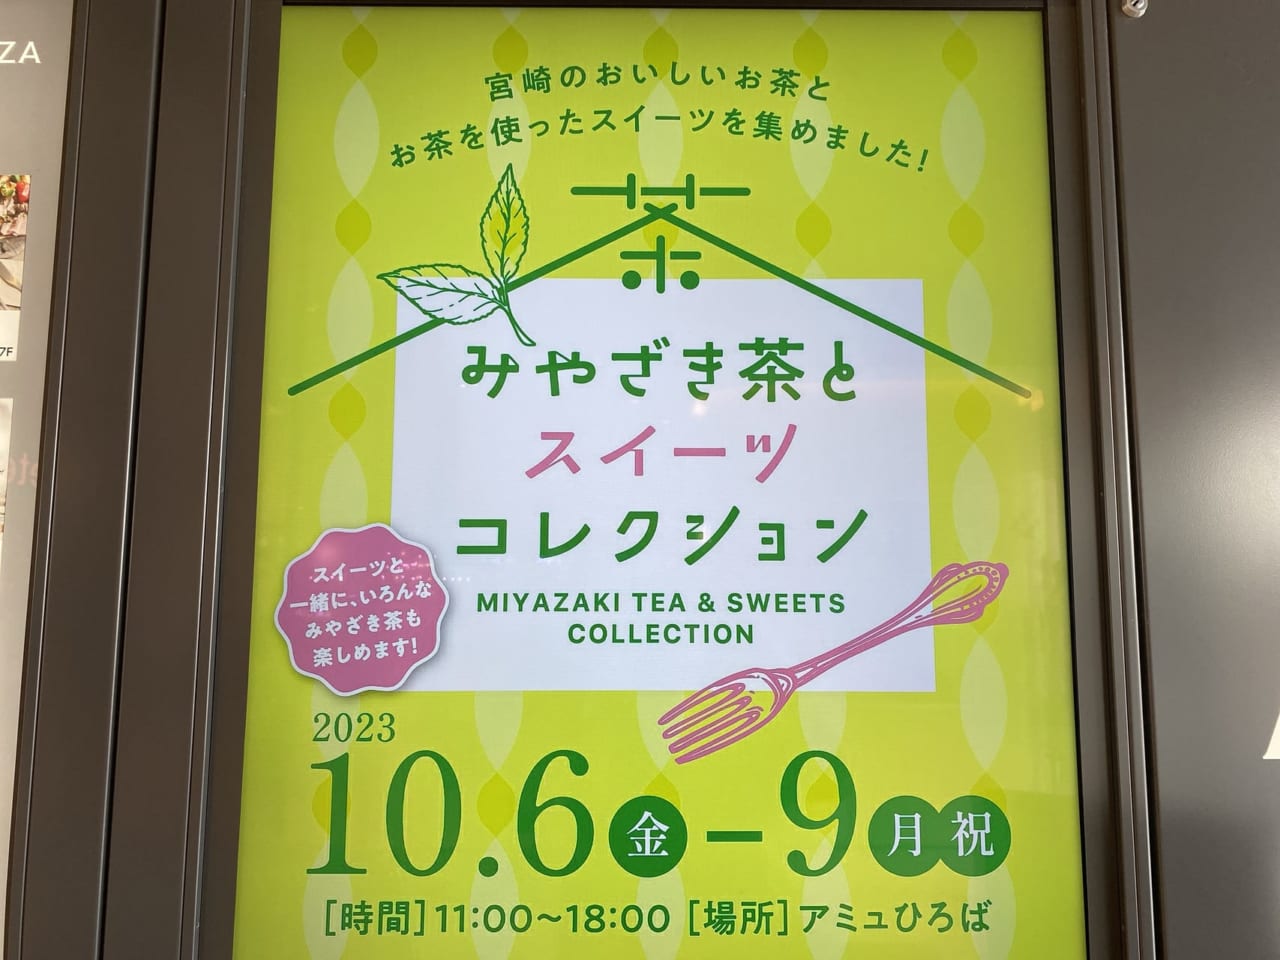 宮崎市 アミュプラザみやざき 期間限定イベント みやざき茶とスイーツコレクション3